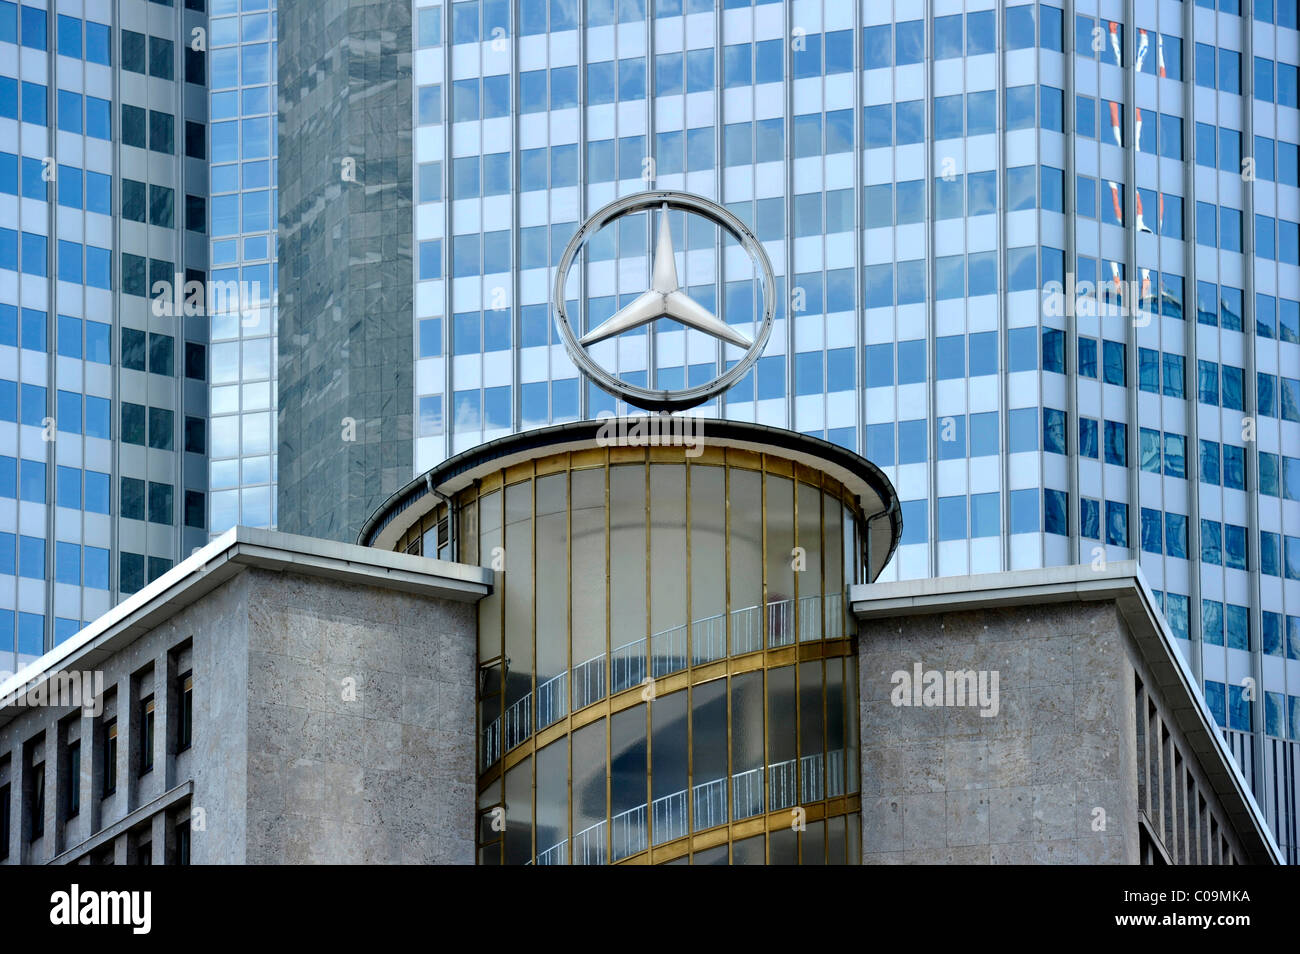 Mercedes star, former car park at the Kaiserplatz, facade of the European Central Bank ECB, Financial District Stock Photo